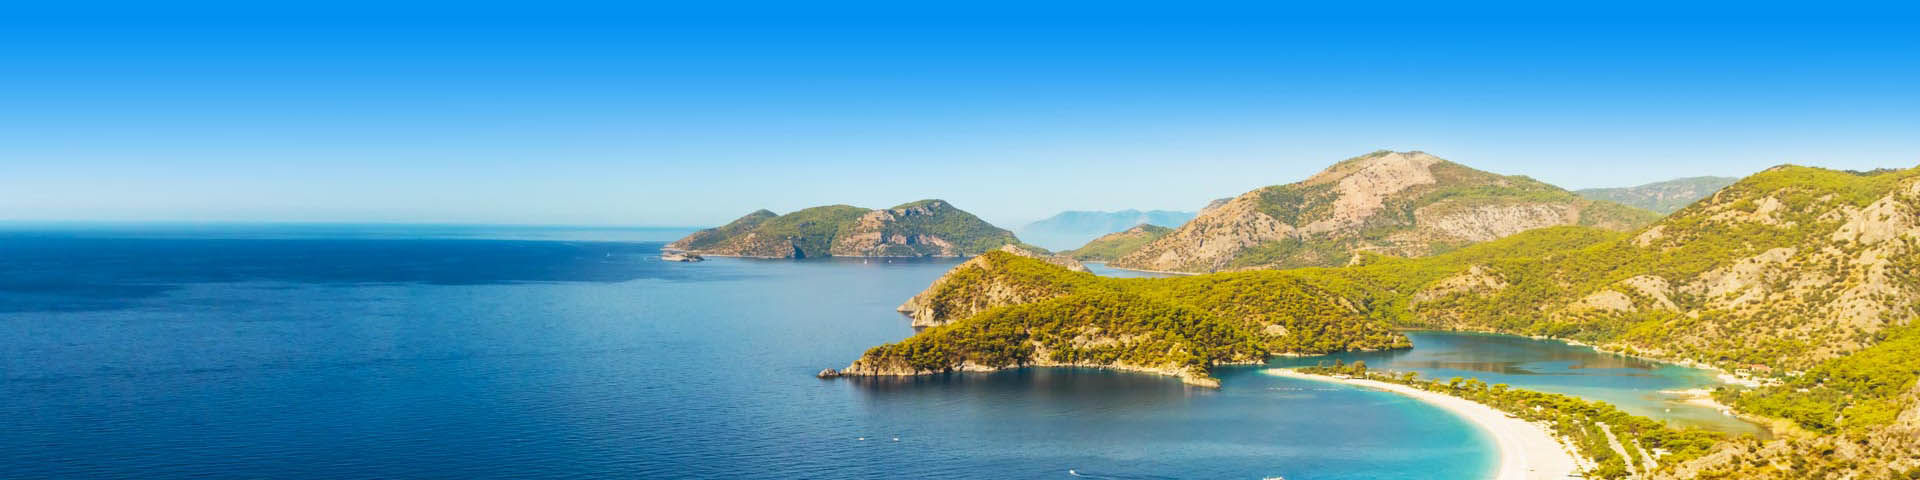 Groene kleine eilanden, in de Turkse Rivera. Met prachtig azuurblauwe zee en stranden 